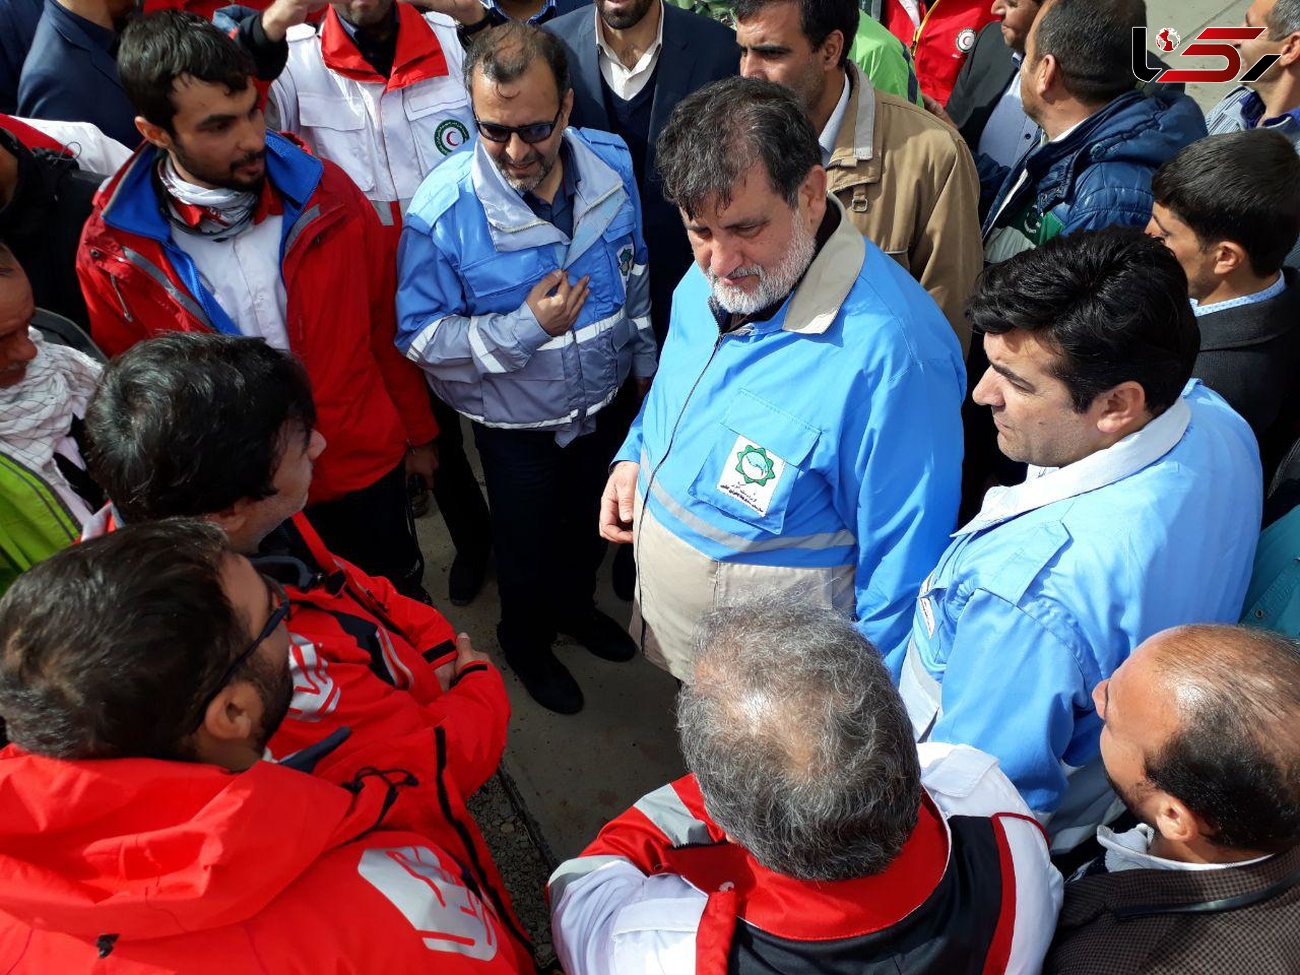 15 کوله از اجساد به پایین رسید + فیلم توضیحات فرمانده میدان هلال احمر در محل حادثه